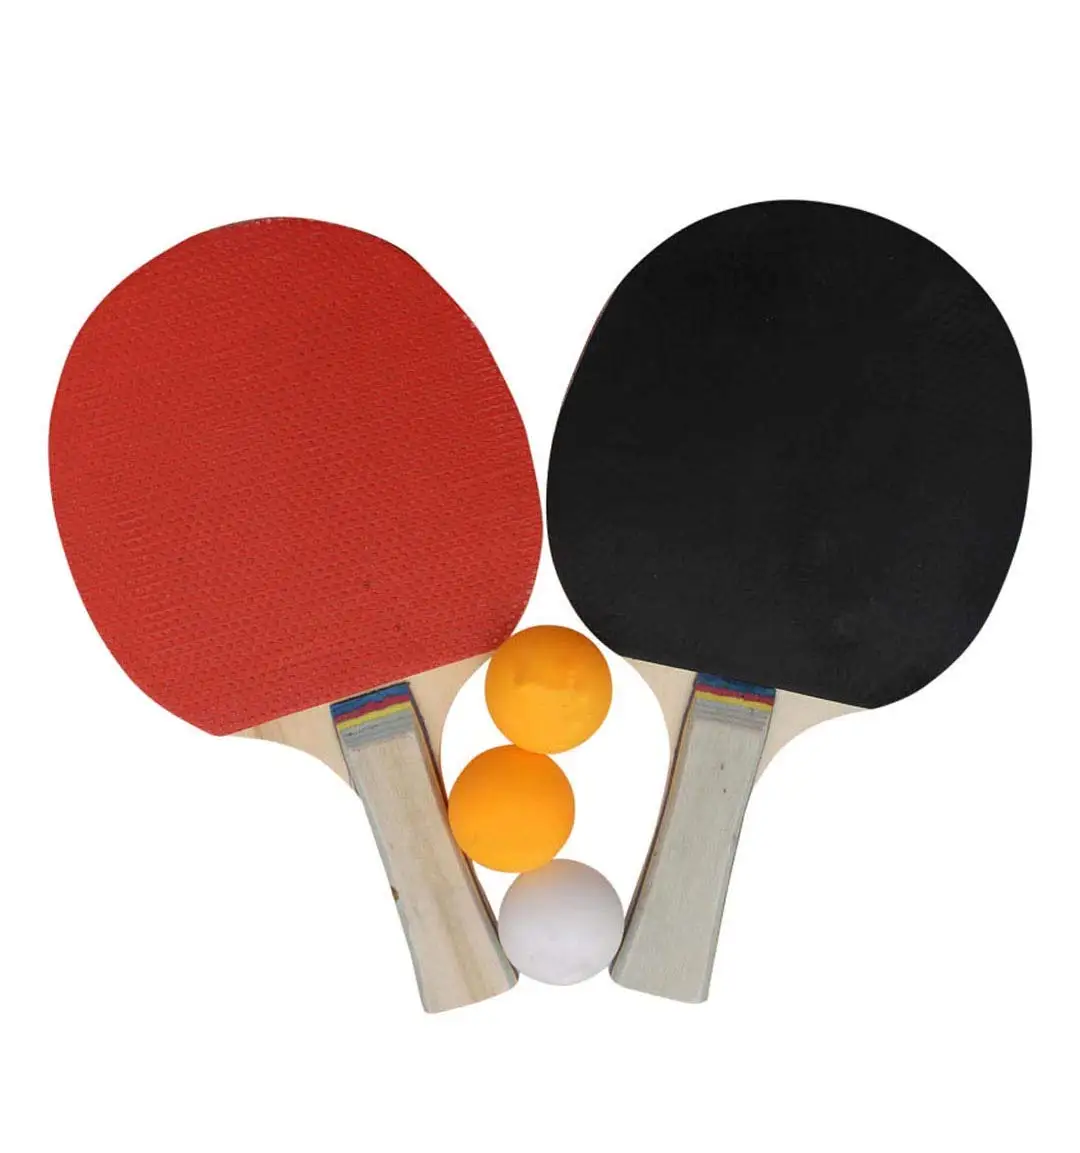 Neu Tennis Gummi für Tischtennisschläger Blade Schläger Ping s/# 